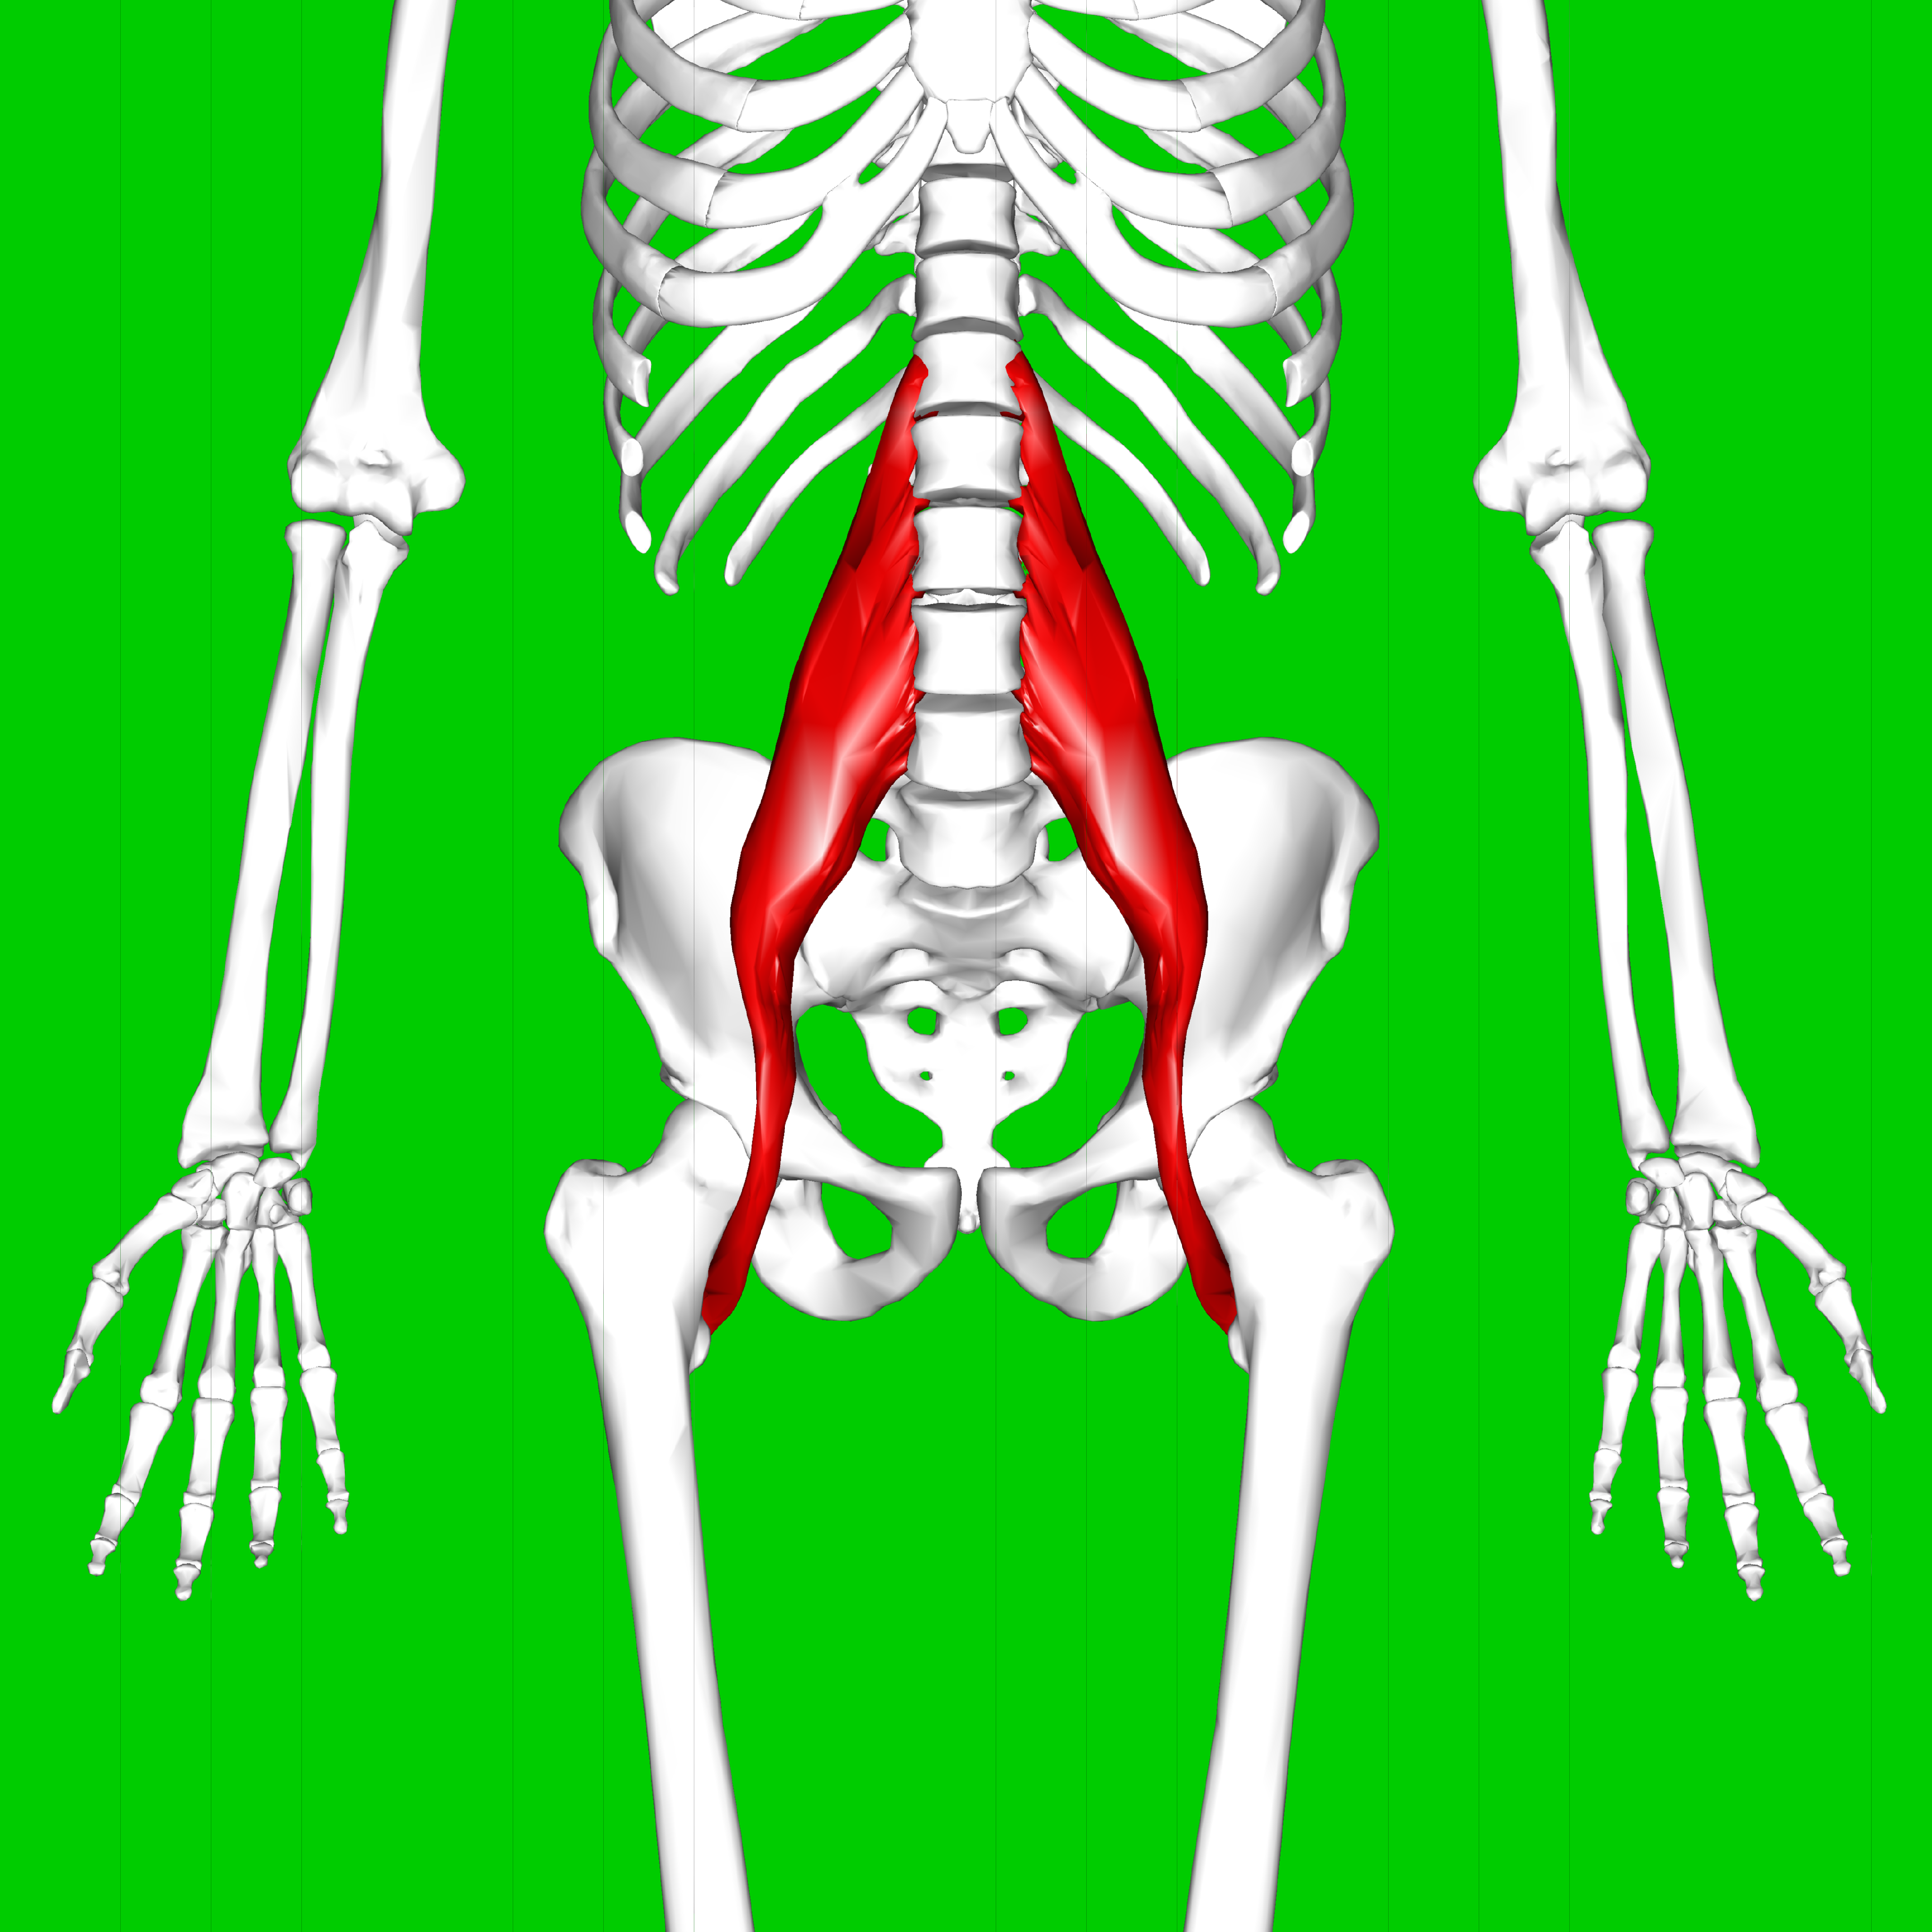 Coluna vertebral PUC Rio - Fisioterapia